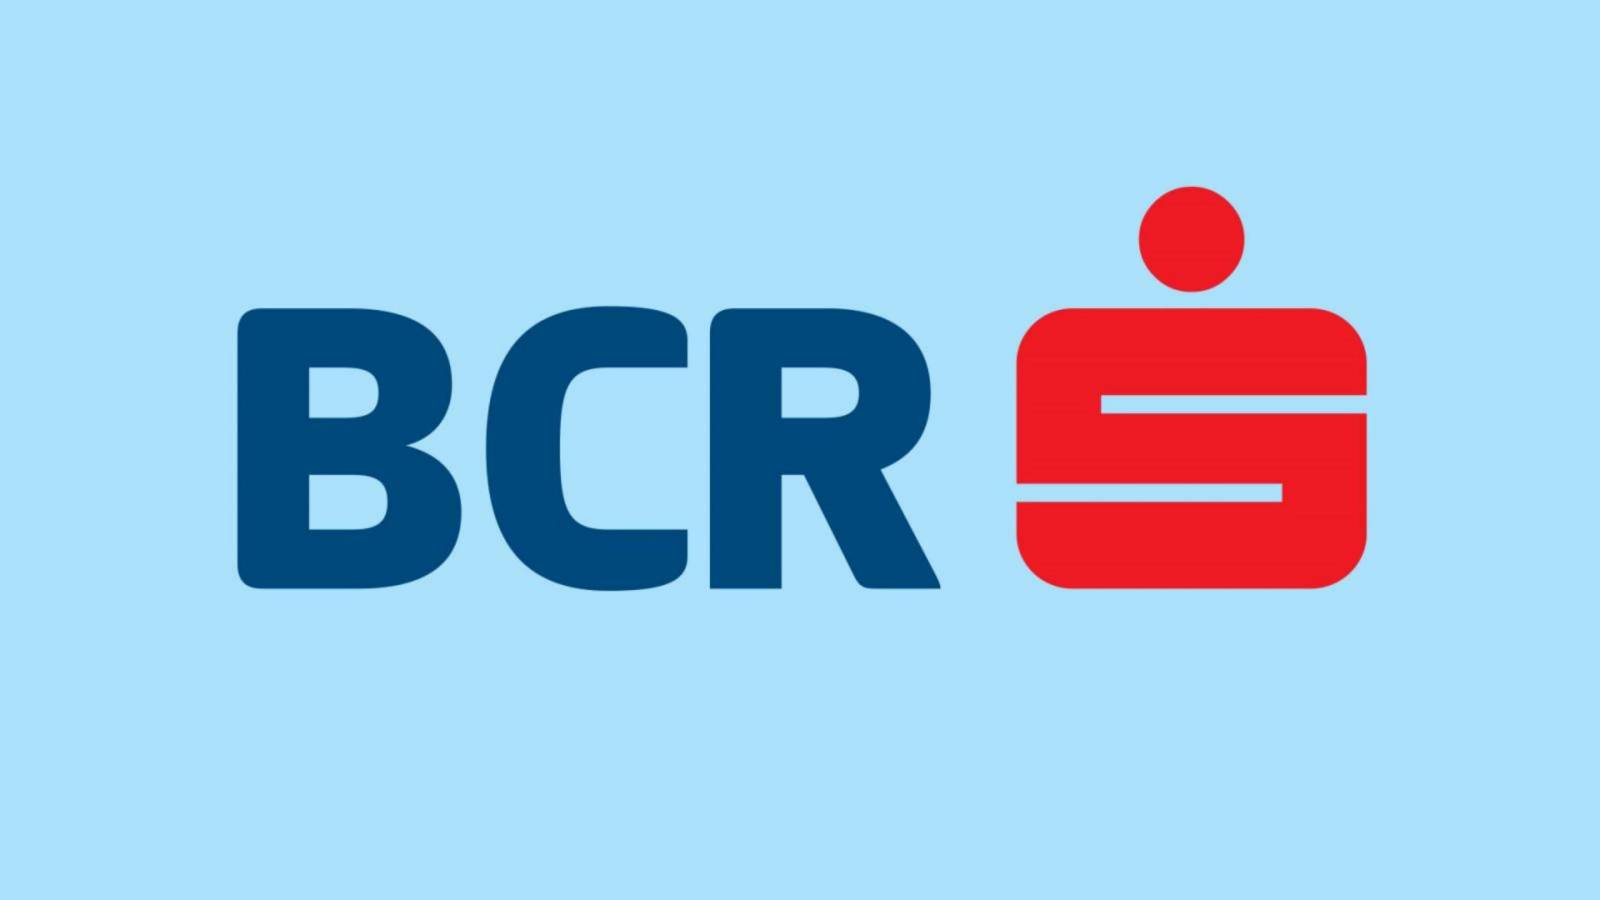 BCR Rumänien besöker